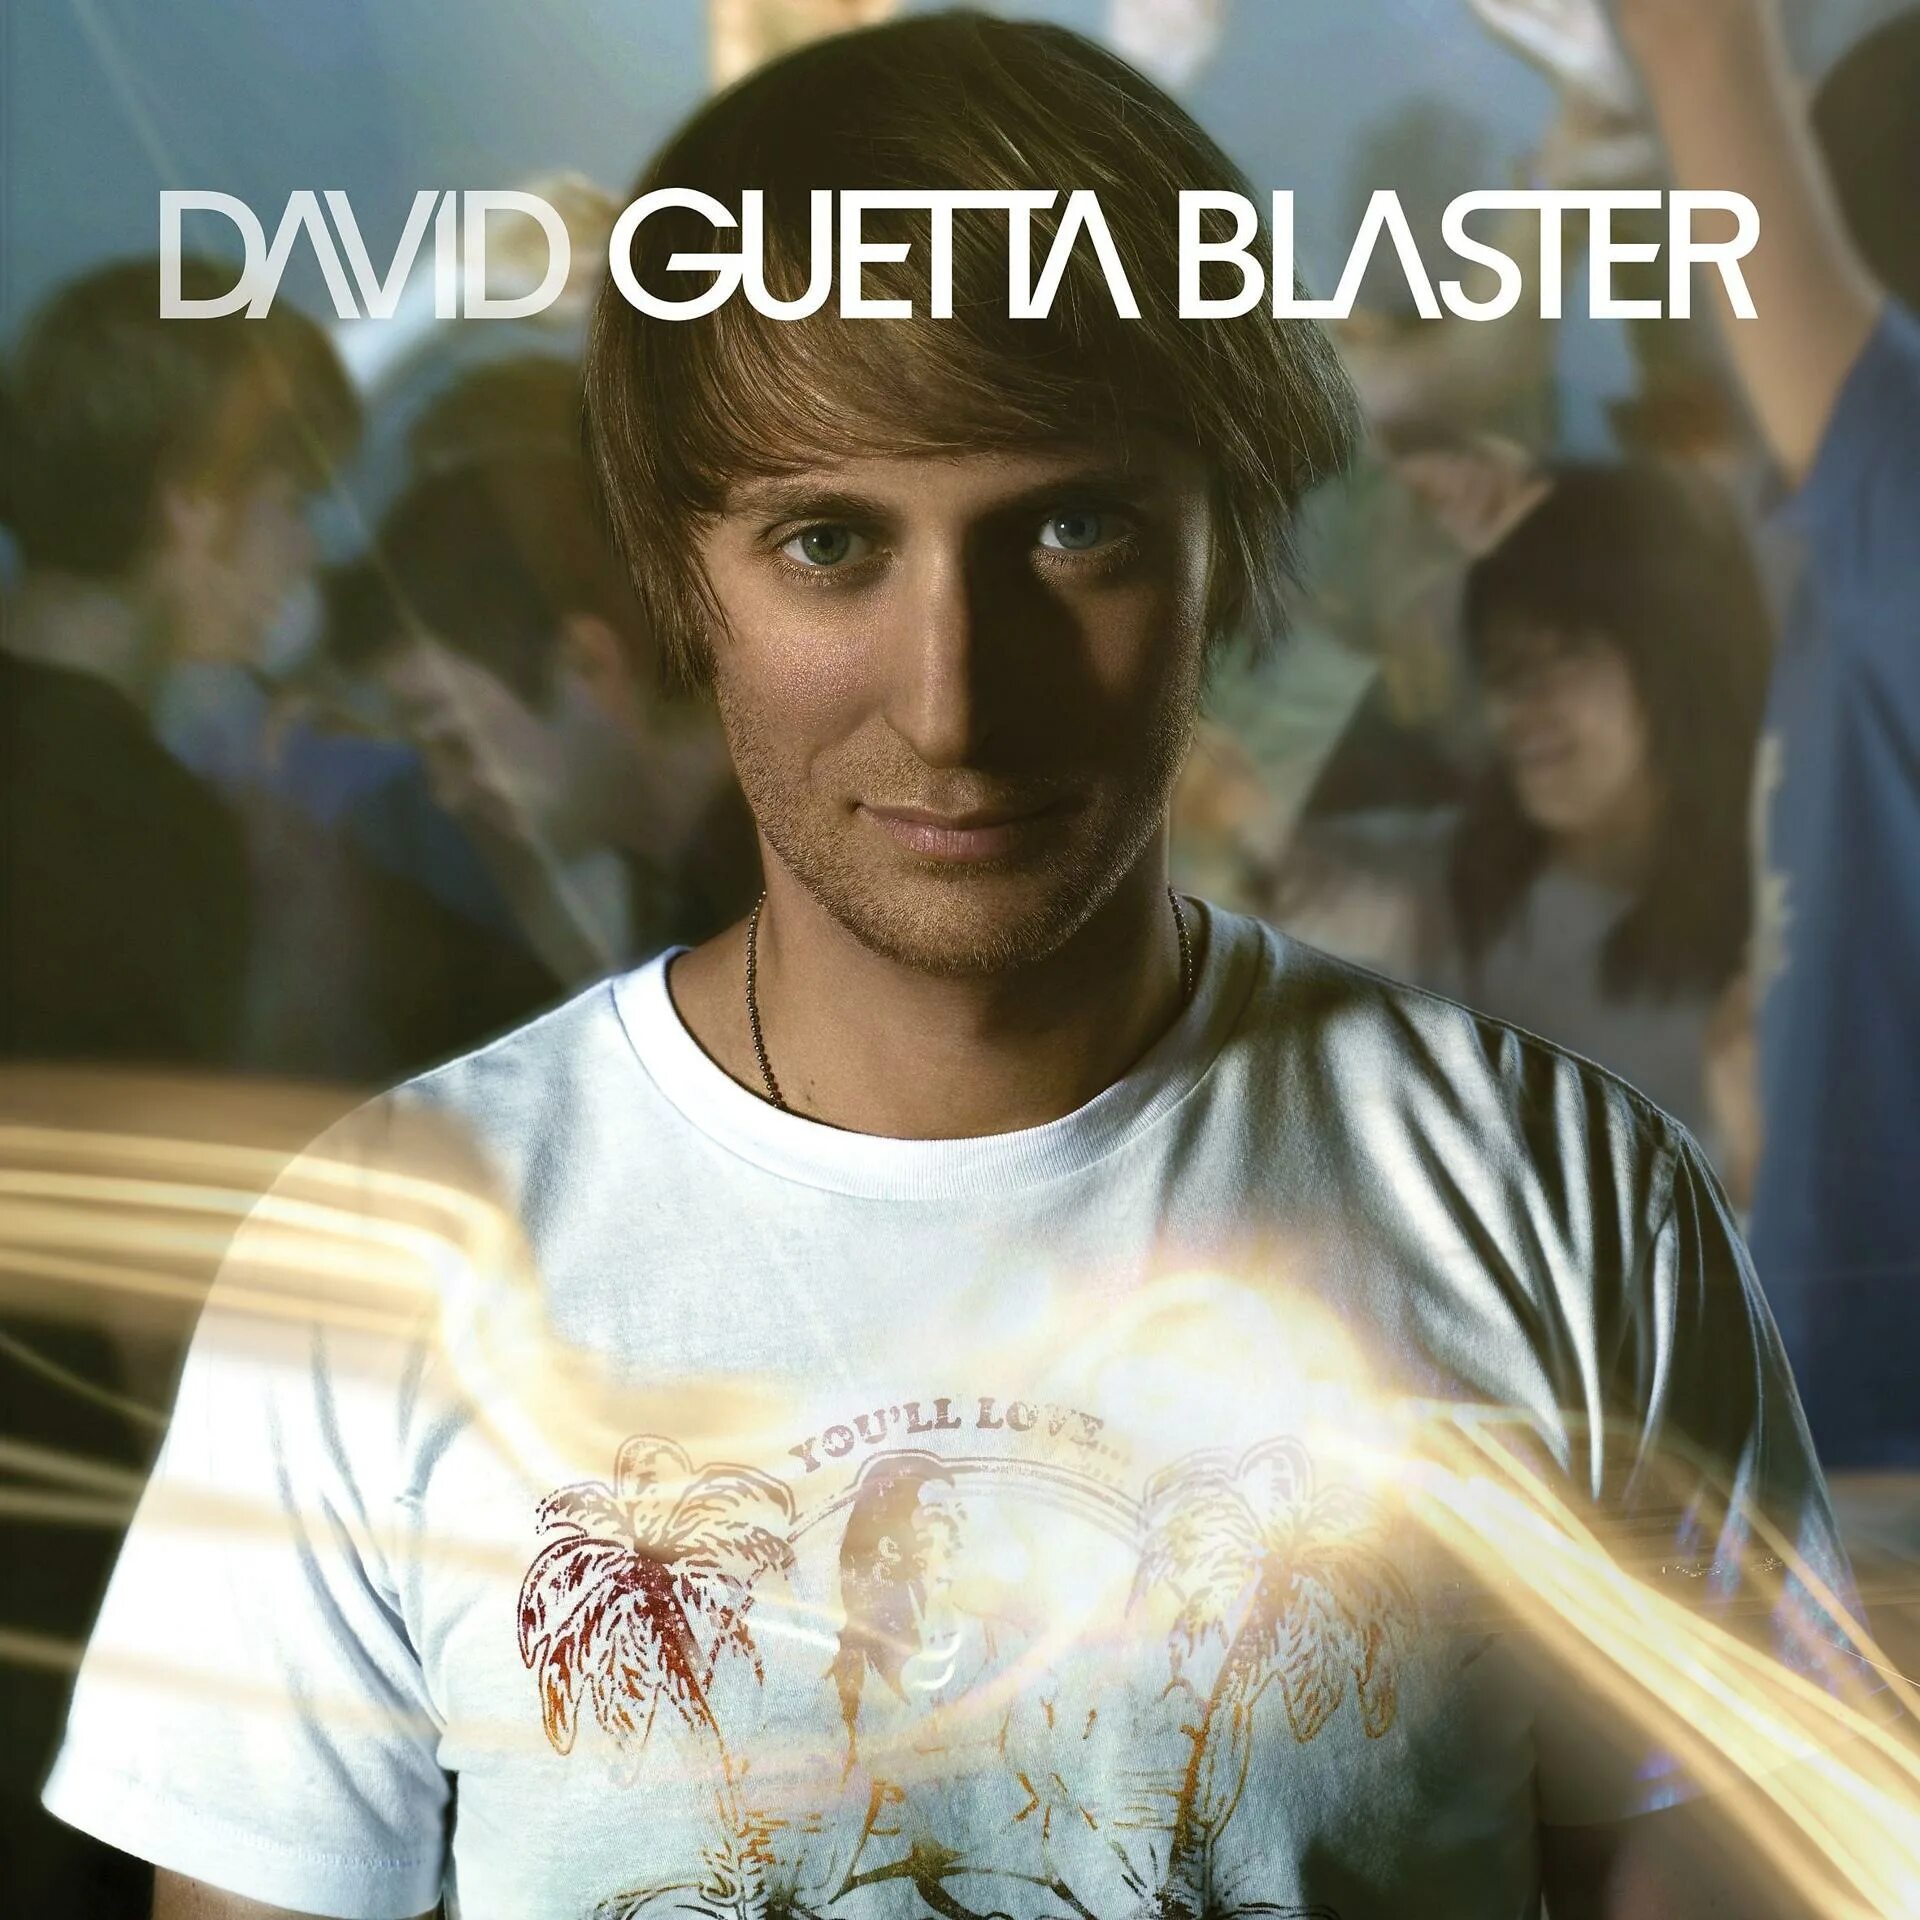 David guetta world is. Guetta David "Guetta Blaster". 2004 - Guetta Blaster. David Guetta 2005. David Guetta album Blaster.